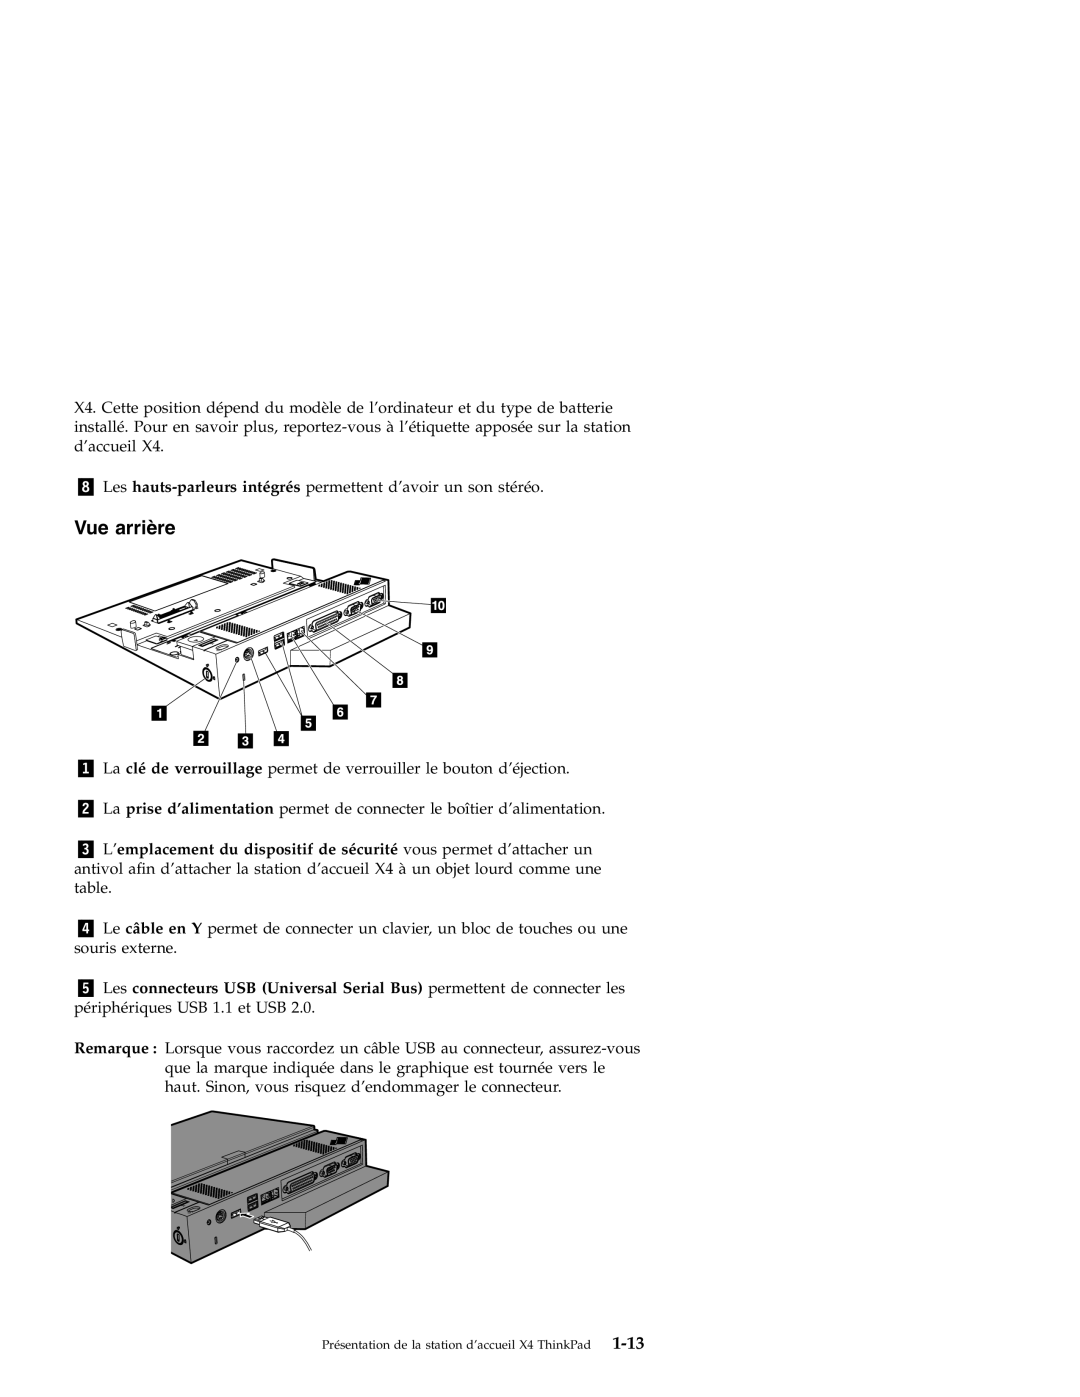 IBM X4 manual Vue arrière 